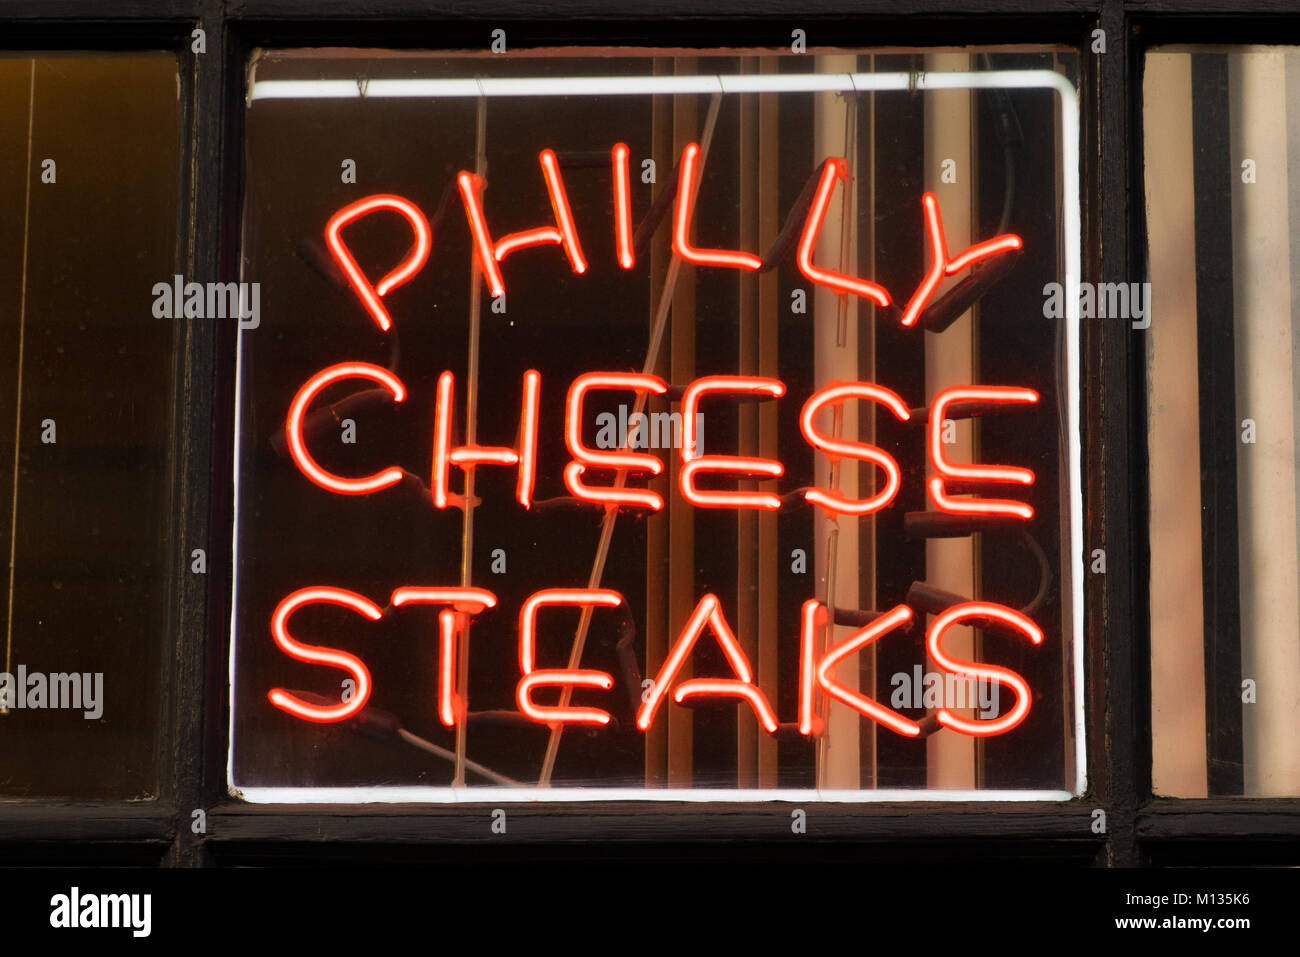 PHILADELPHIA, PA - Dicembre 13, 2014: Philadelphia Philly cheese steak insegna al neon in un ristorante locale Foto Stock